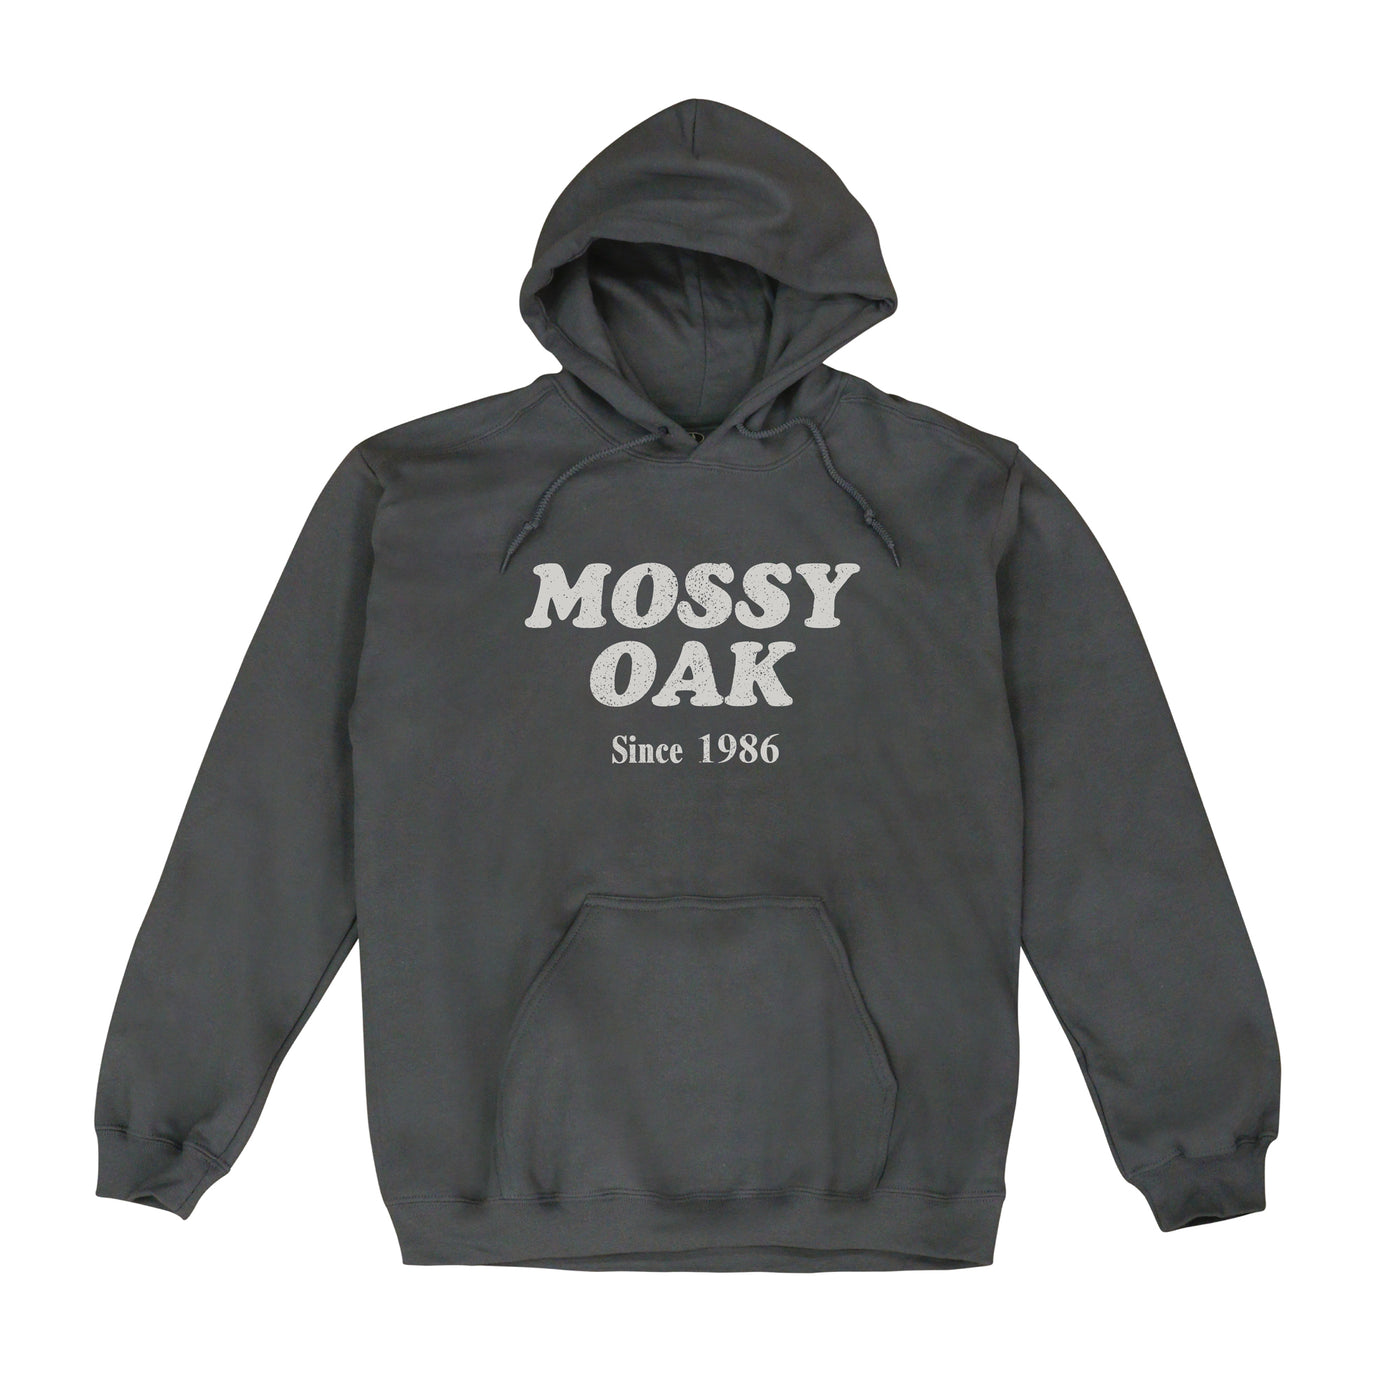 Mossy Oak Est 1986 Hoodie Charcoal